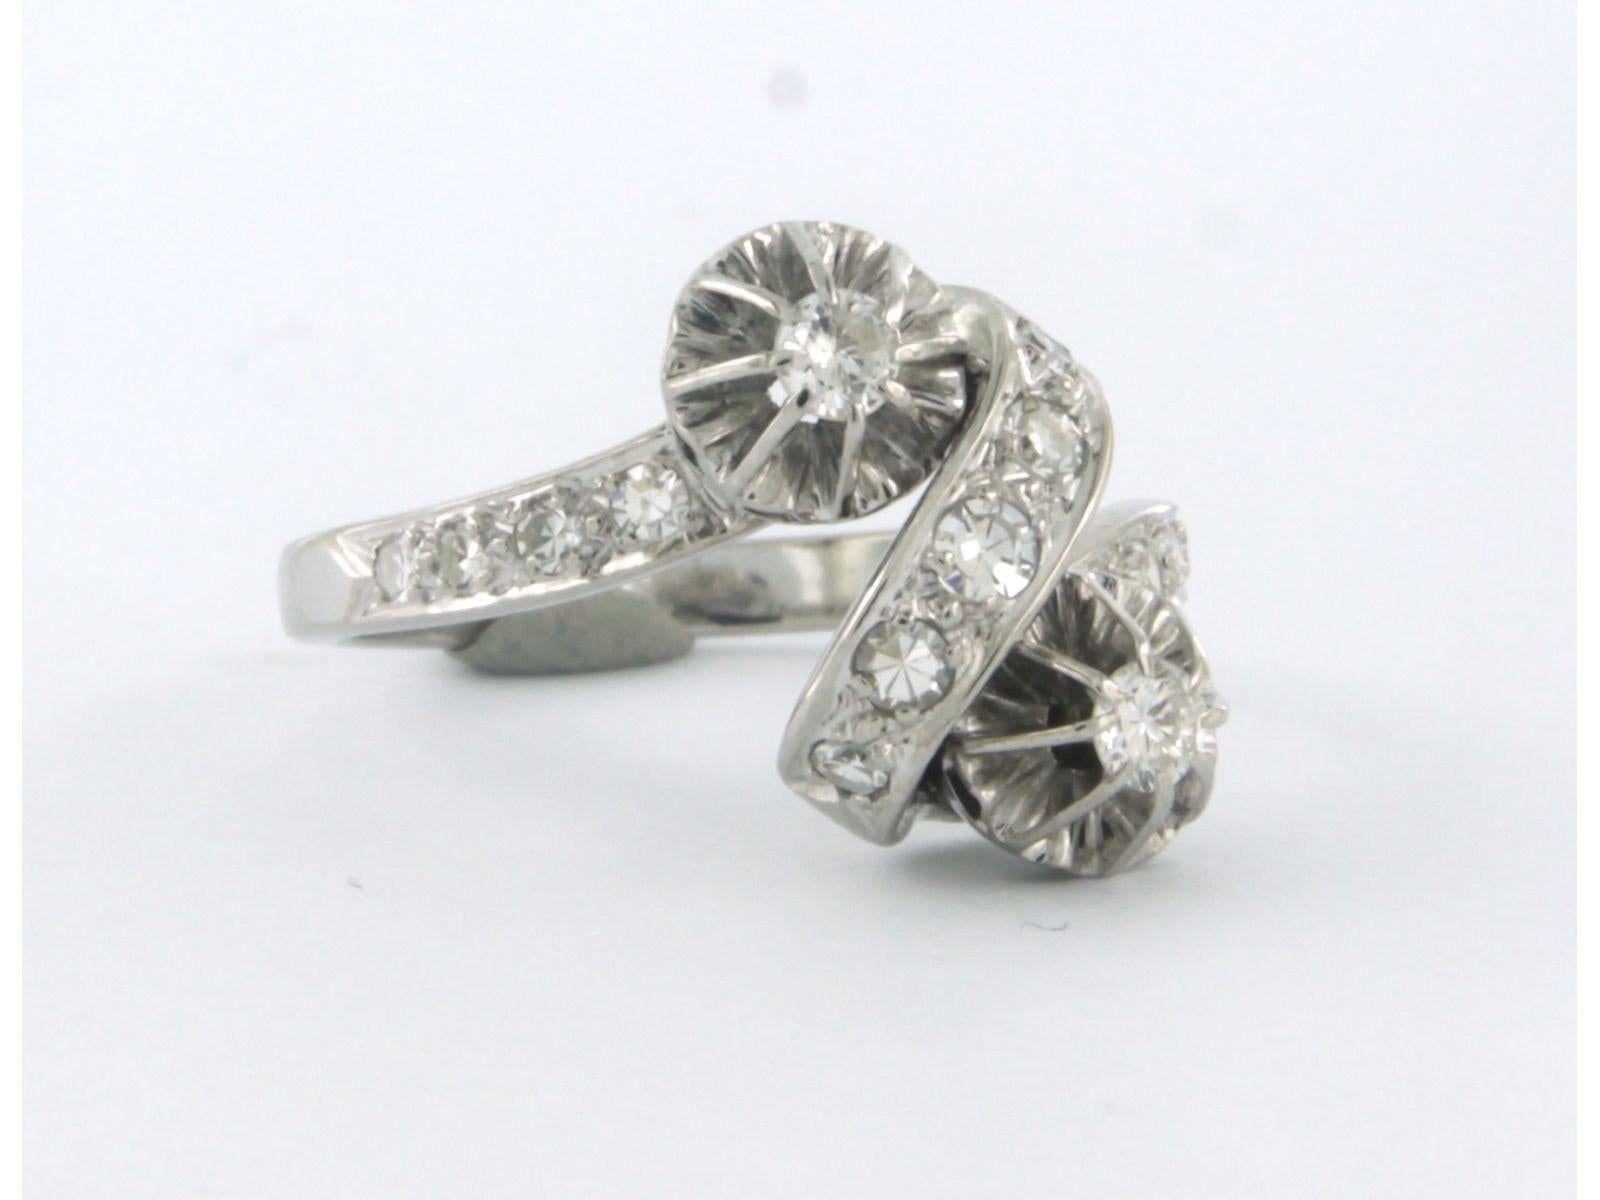 Ring aus 18 Karat Weißgold, besetzt mit Diamanten im Brillant- und Einzelschliff. 0.50ct - F/G - VS/SI - Ringgröße U.S. 6.5 - EU. 17(53)

Ausführliche Beschreibung

die Oberseite des Rings ist 1,3 cm breit und 8,5 mm hoch

Ringgröße US 6.5 - EU.